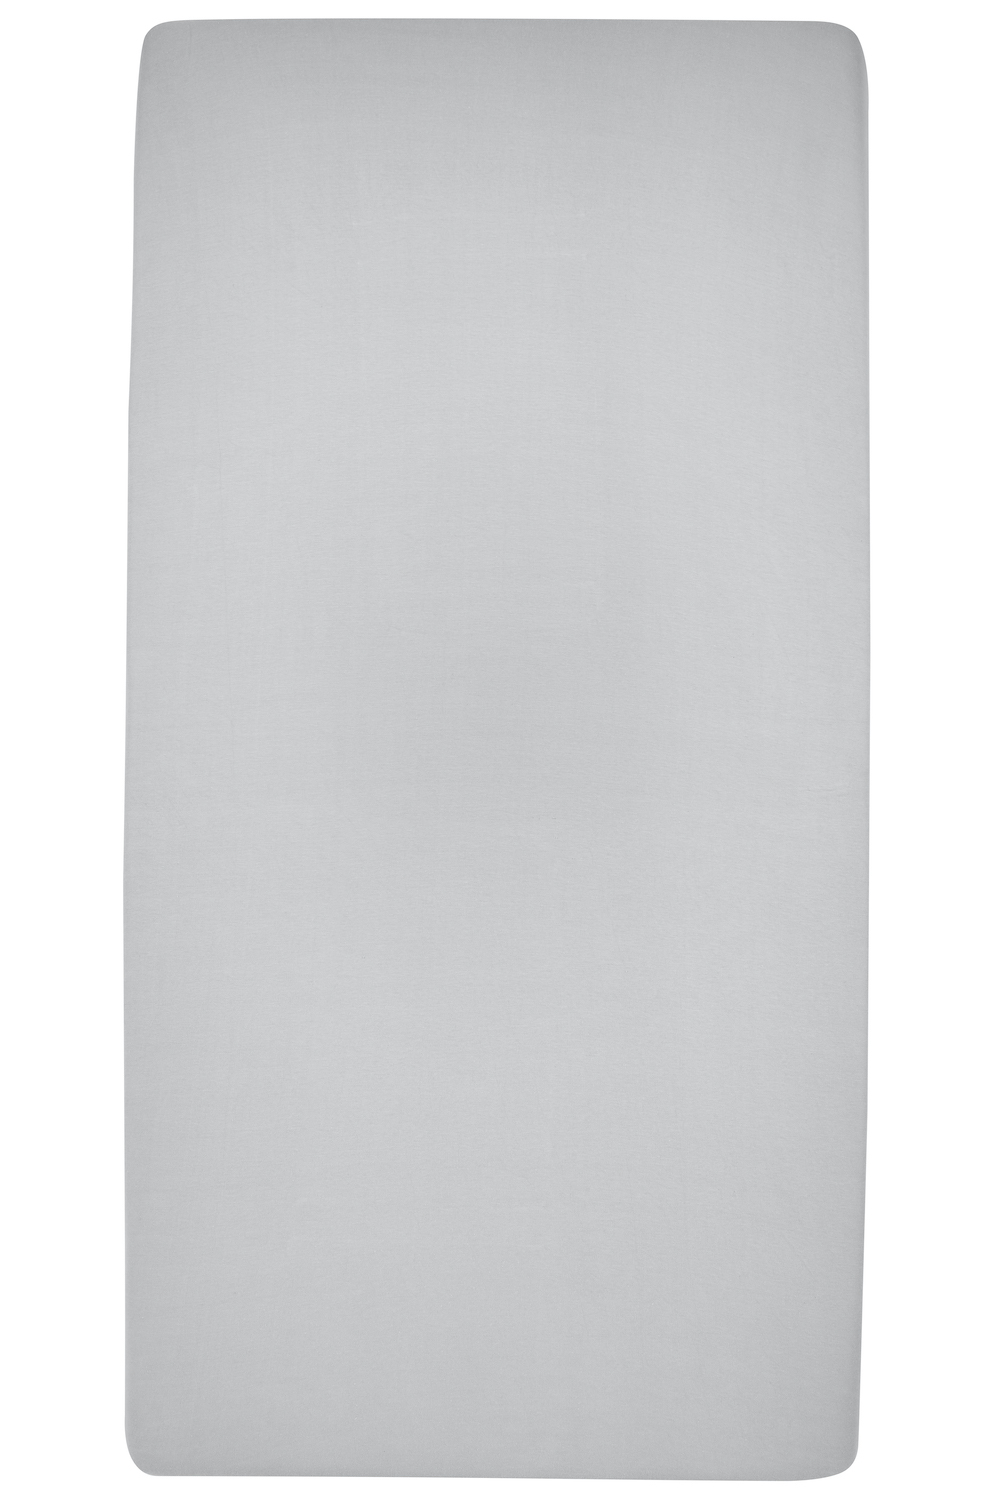 Hoeslaken eenpersoonsbed Uni - light grey - 90x200cm